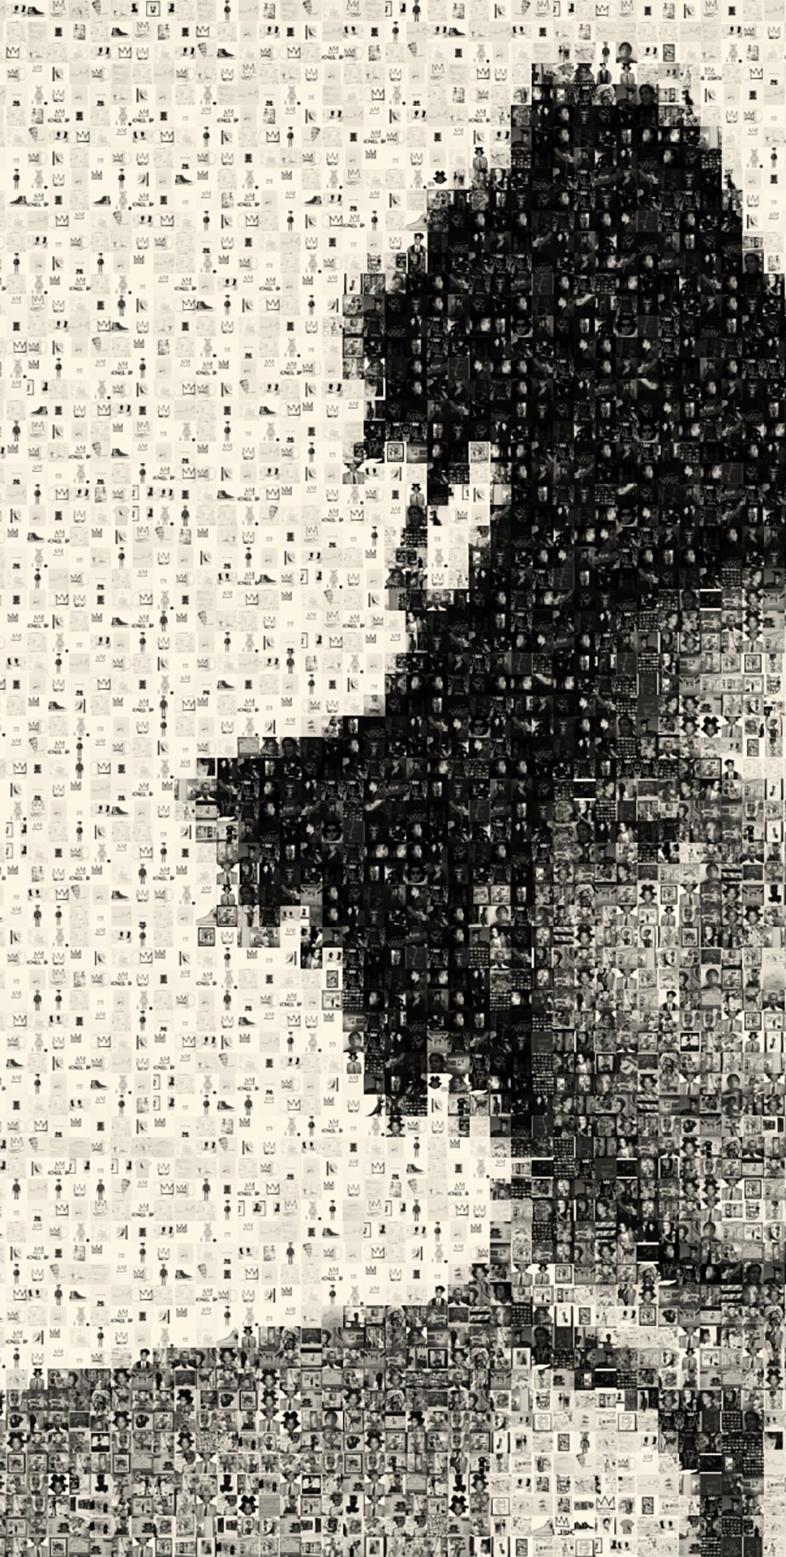 36x24 Jean Michel Basquiat  Exhibition Print  PHOTOMOSAIC PHOTOGRAPHY Pop Art - Photograph by Destro